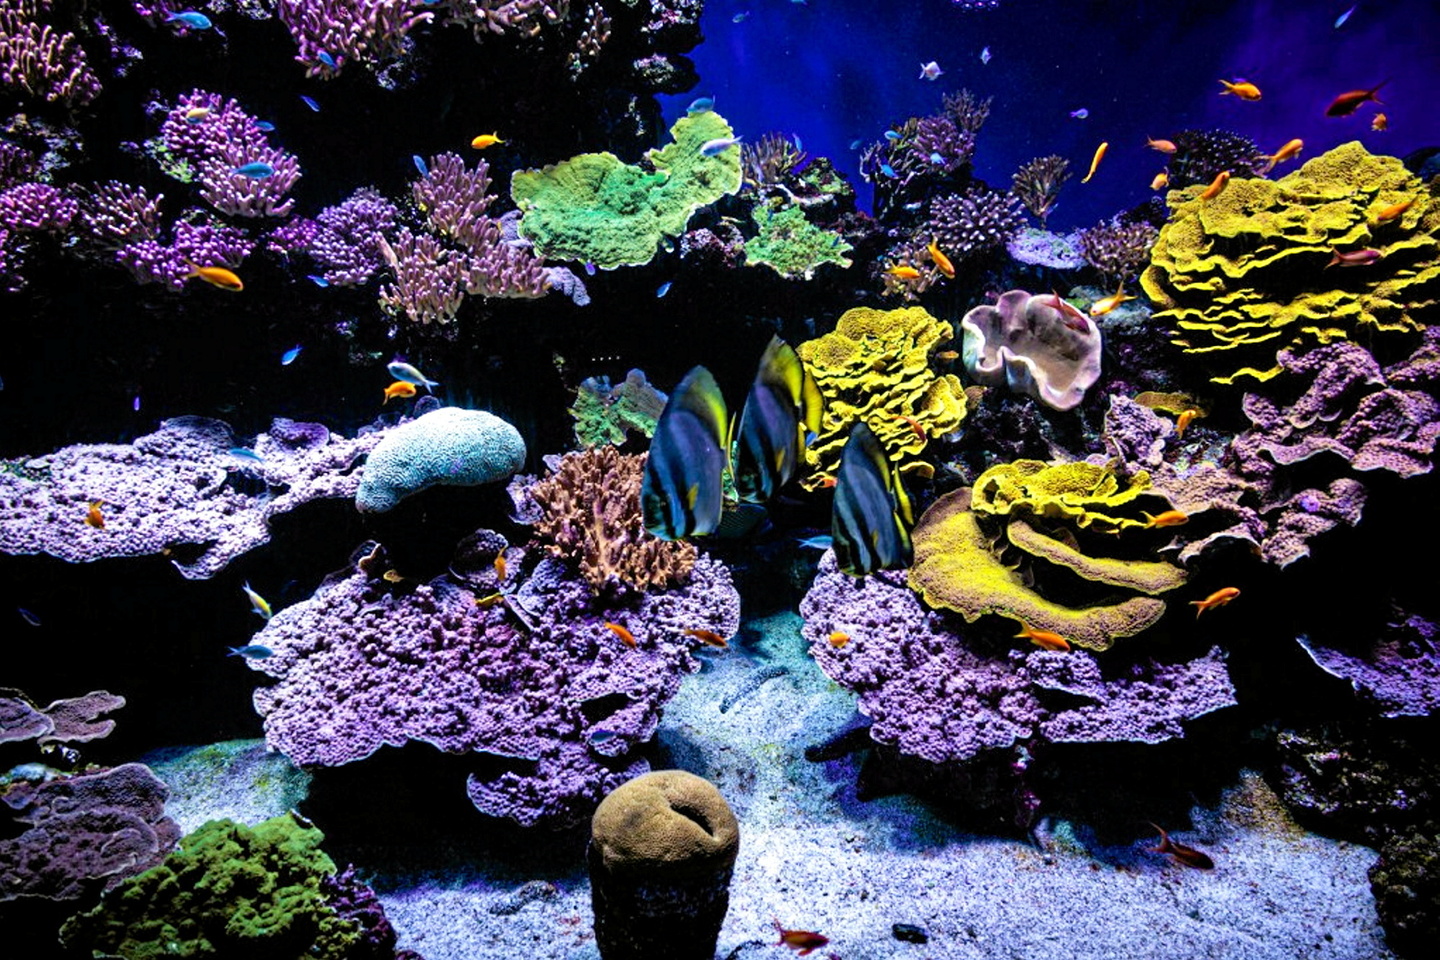 Une étude révèle la mise en danger des coraux par certains composés chimiques